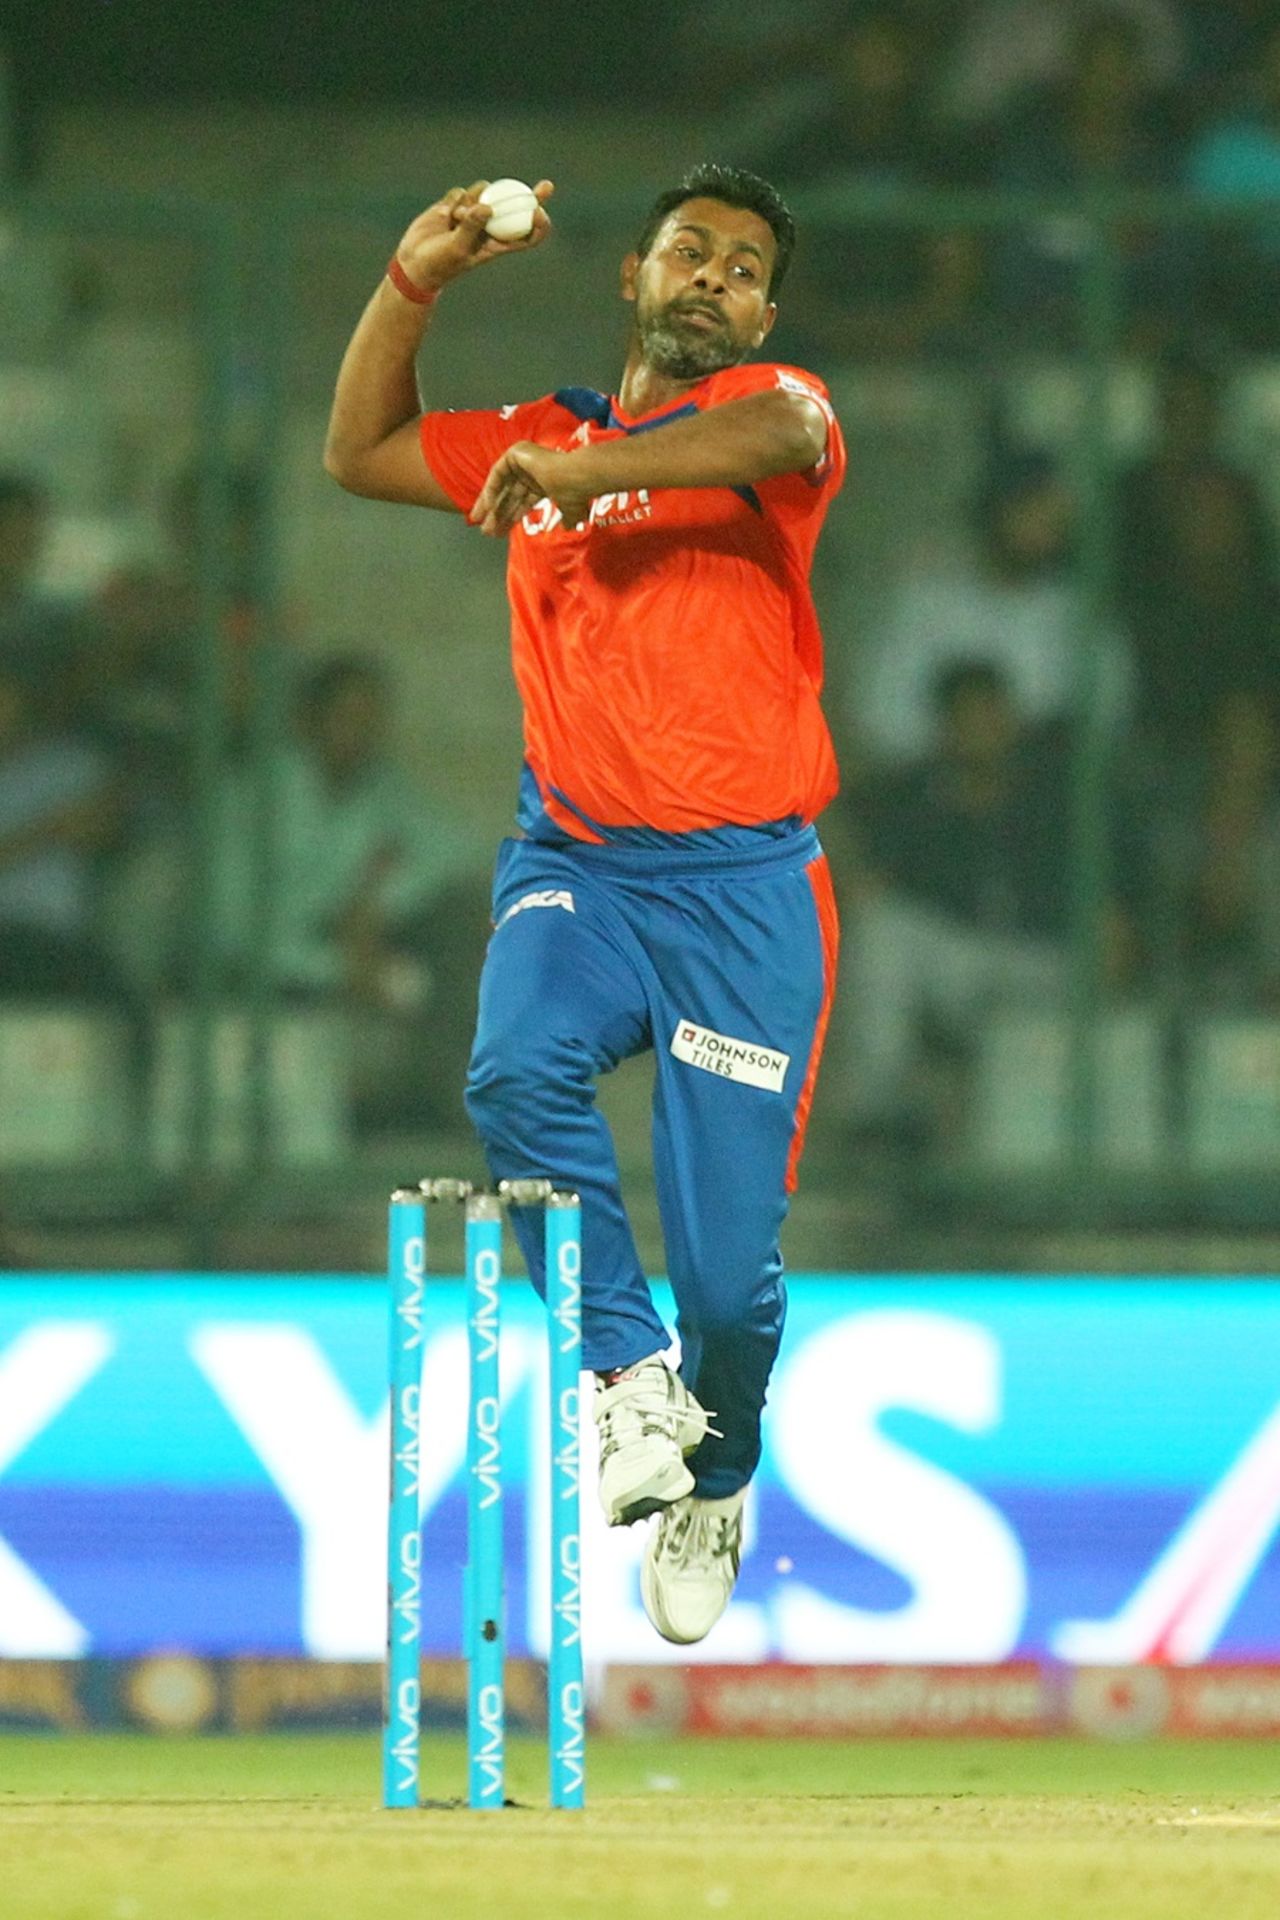 Praveen Kumar conceded just 13 runs in four overs, Delhi Daredevils v Gujarat Lions, IPL 2016, Delhi, April 27, 2016